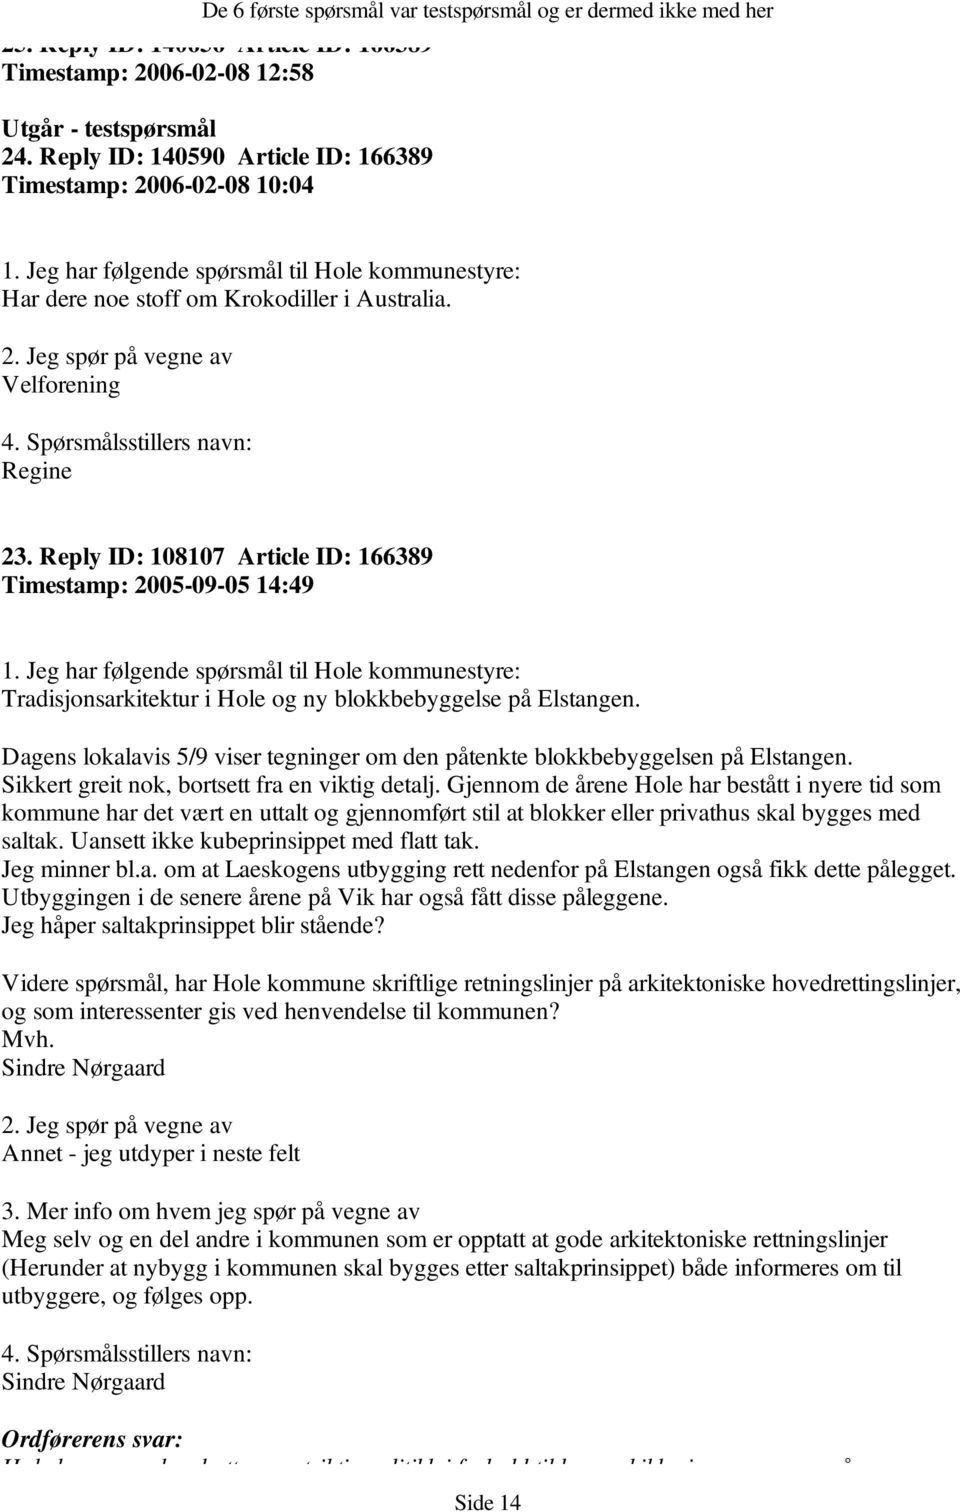 Reply ID: 108107 Article ID: 166389 Timestamp: 2005-09-05 14:49 Tradisjonsarkitektur i Hole og ny blokkbebyggelse på Elstangen.